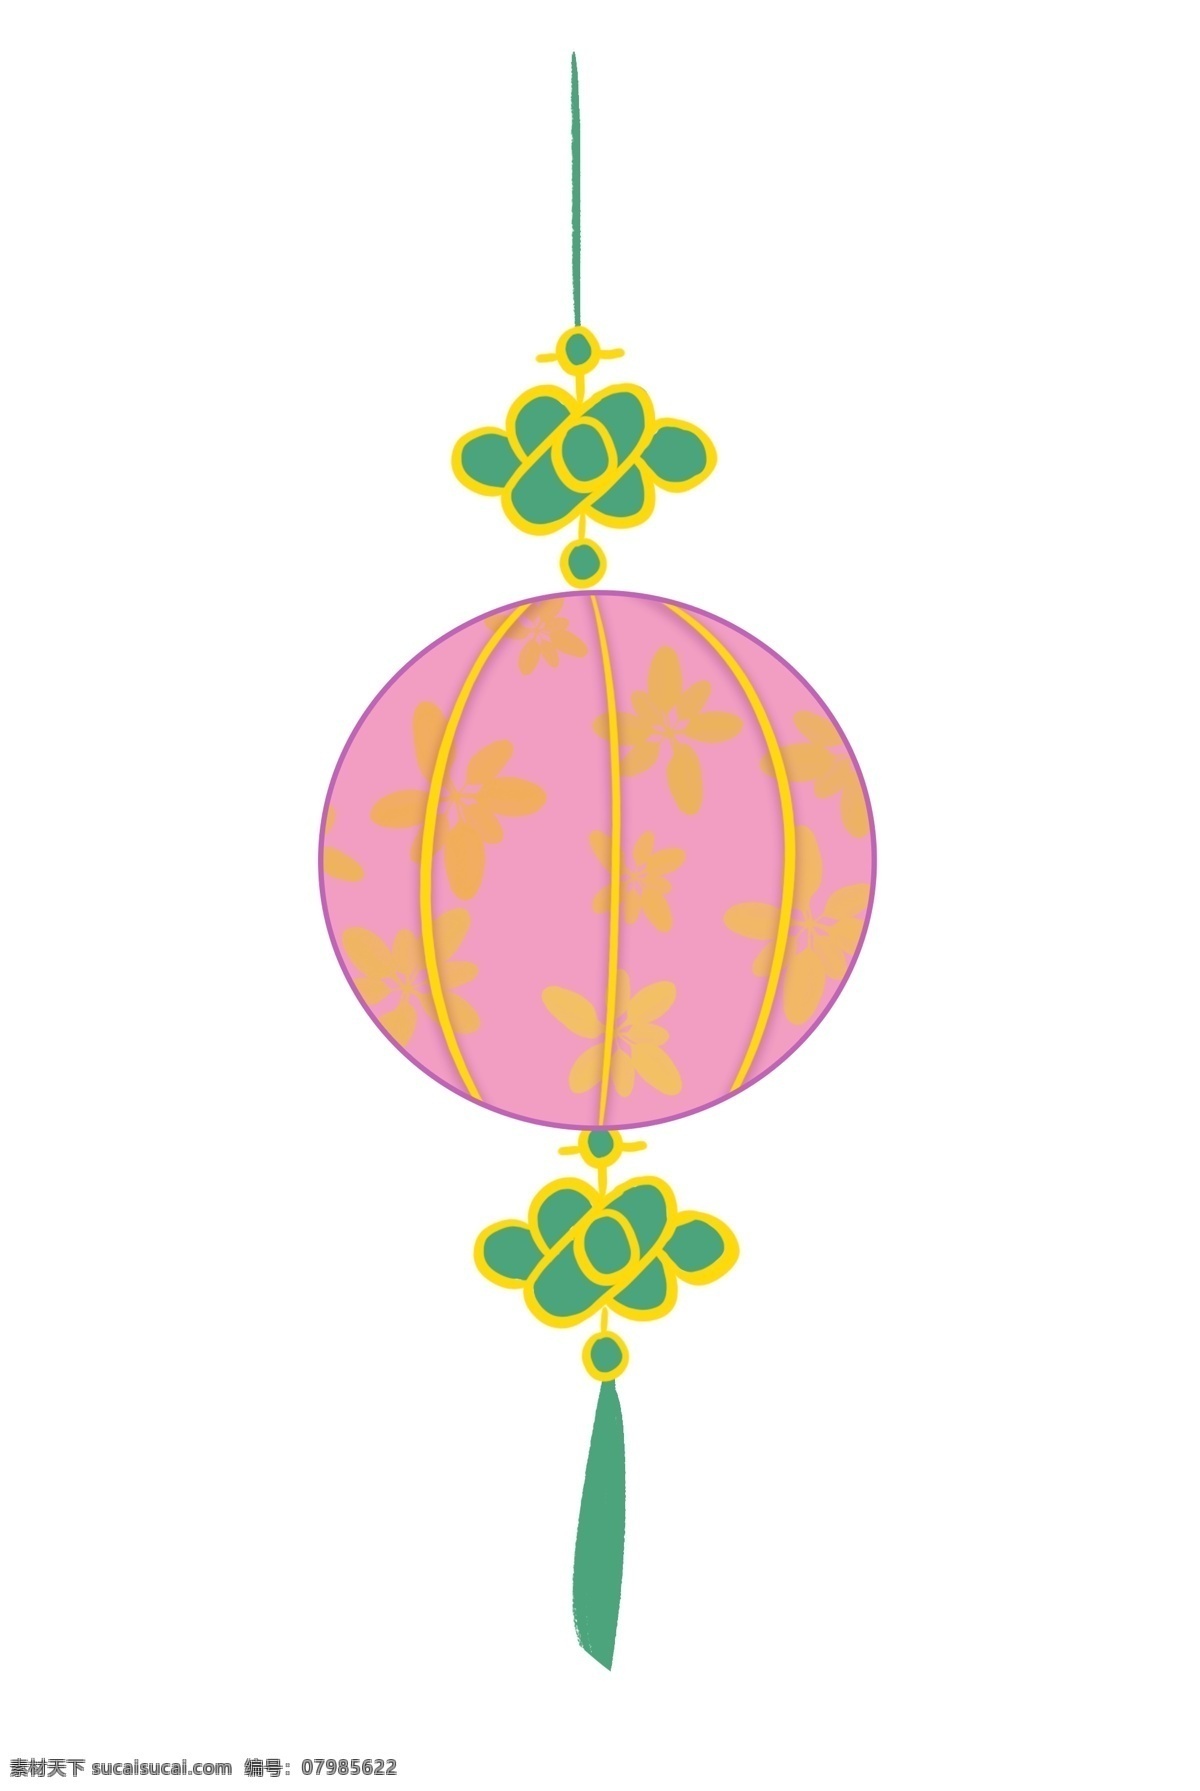 卡通 手绘 粉色 圆球 吊饰 插画 吊坠 装饰物 摆饰品 绿色 黄色 球体 花朵 编织 吉利 吉祥 平安 安康